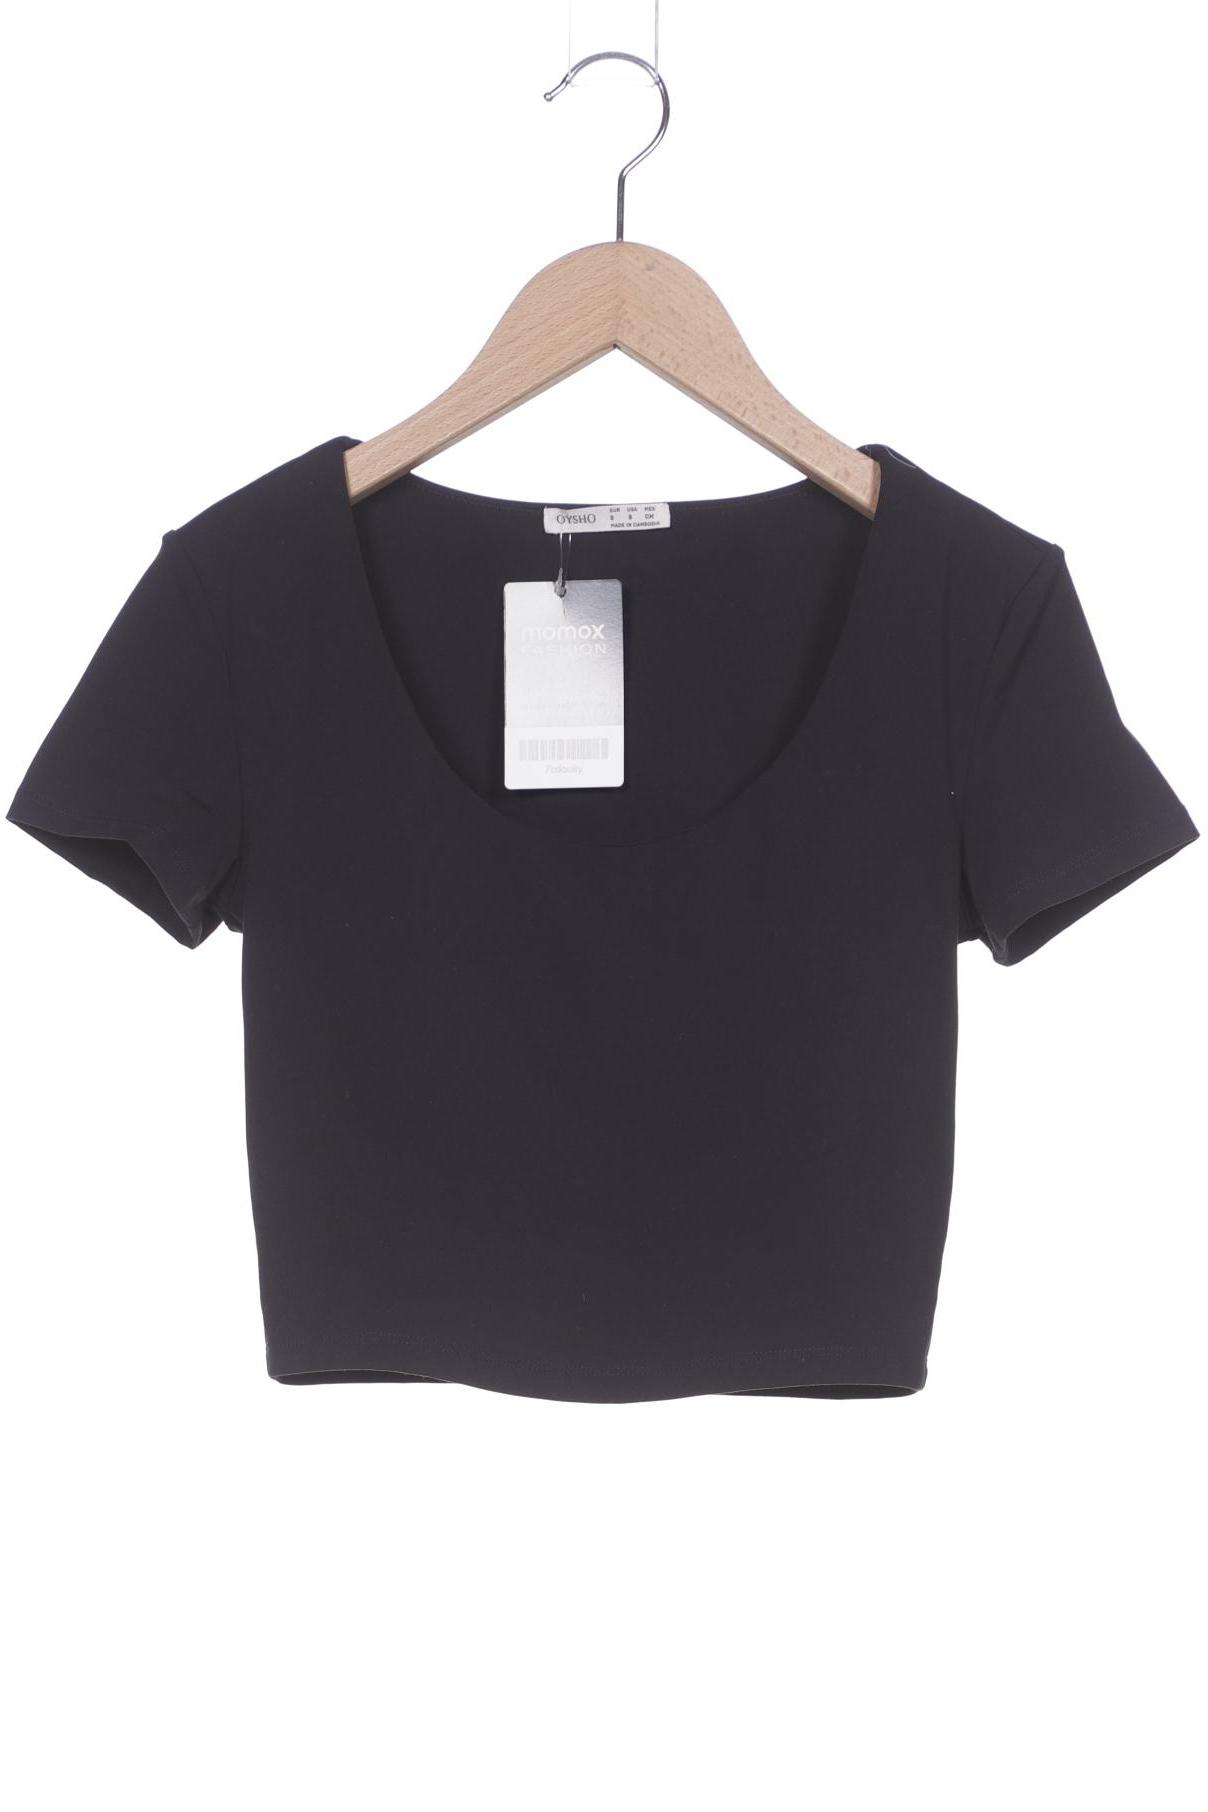 Oysho Damen T-Shirt, schwarz, Gr. 36 von Oysho